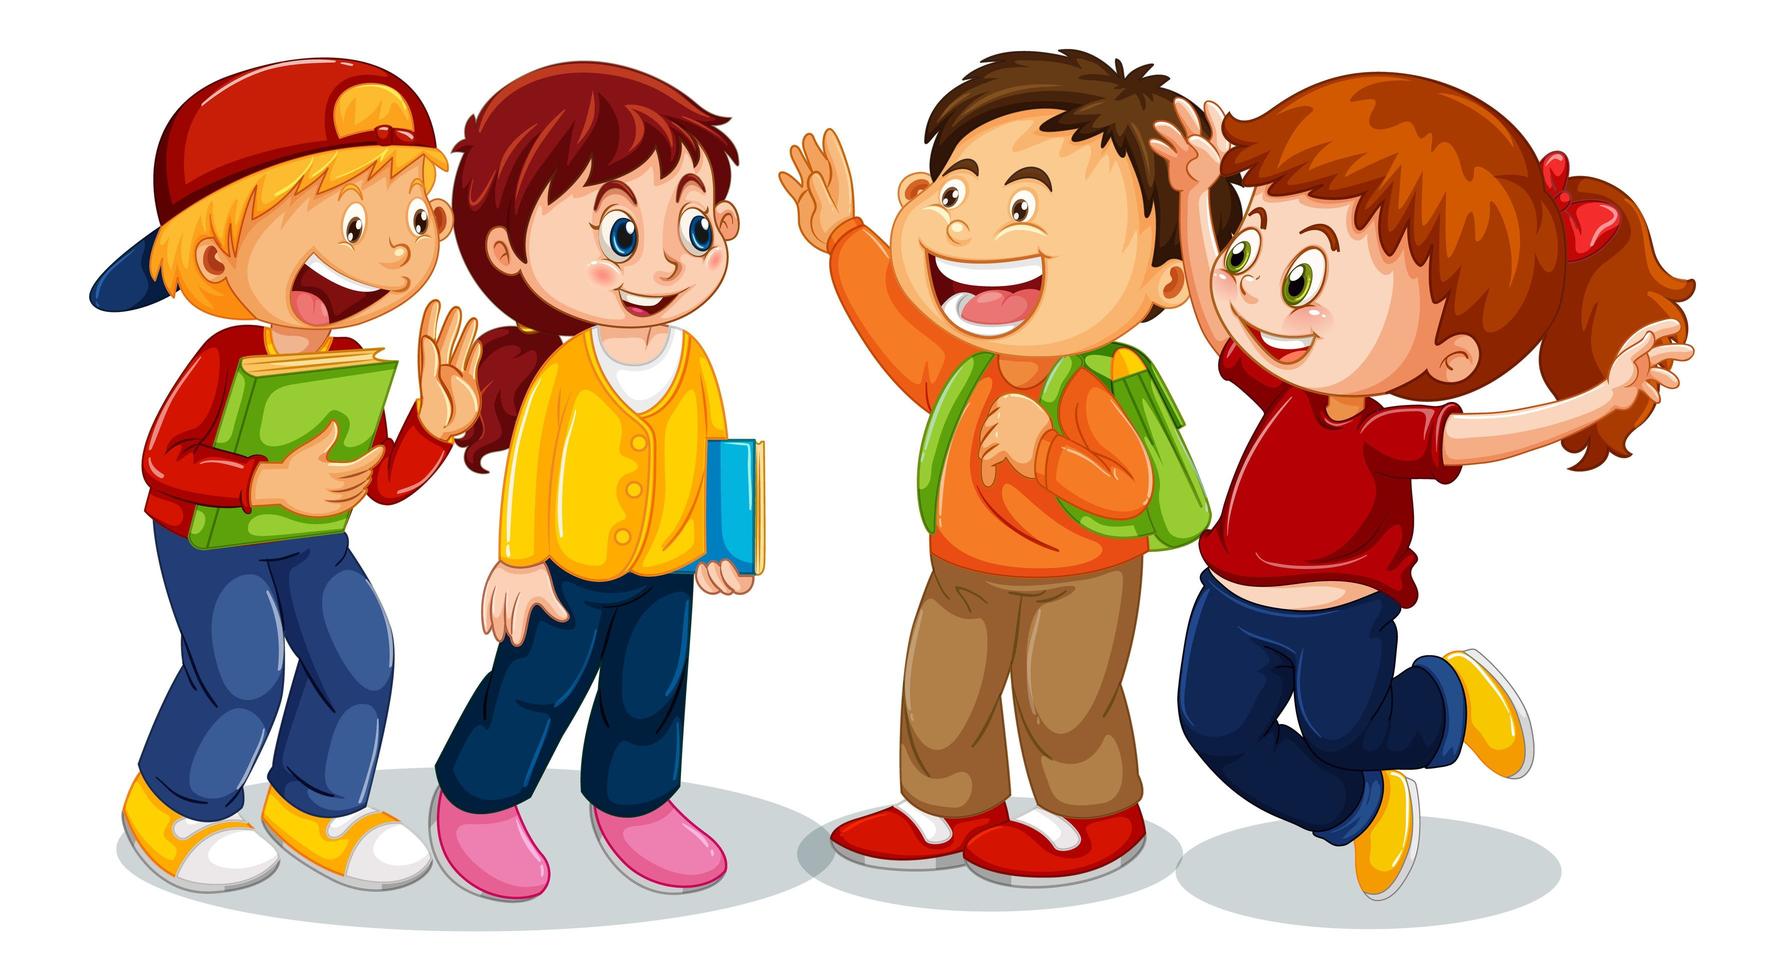 grupo de niños pequeños personaje de dibujos animados sobre fondo blanco vector